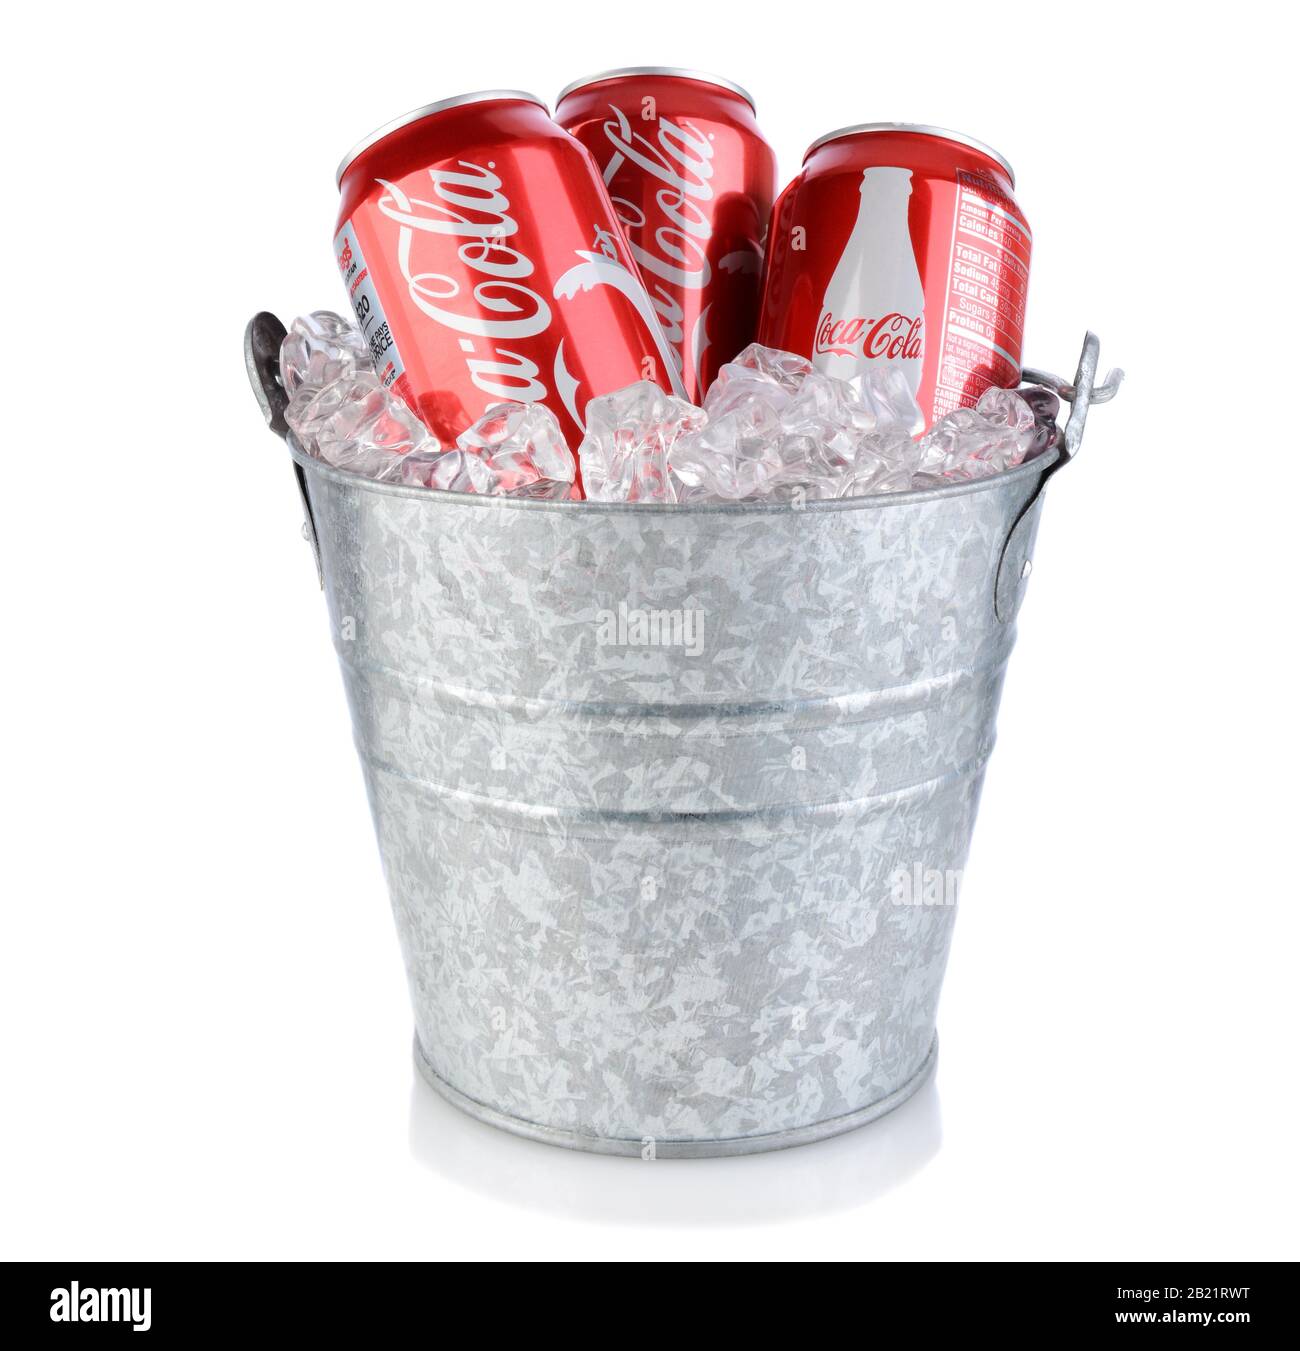 Irvine, CA - 09 gennaio 2014: Tre lattine di Coca-Cola in una secchiello di ghiaccio. Il coke è una delle bevande analcoliche più popolari al mondo. Foto Stock